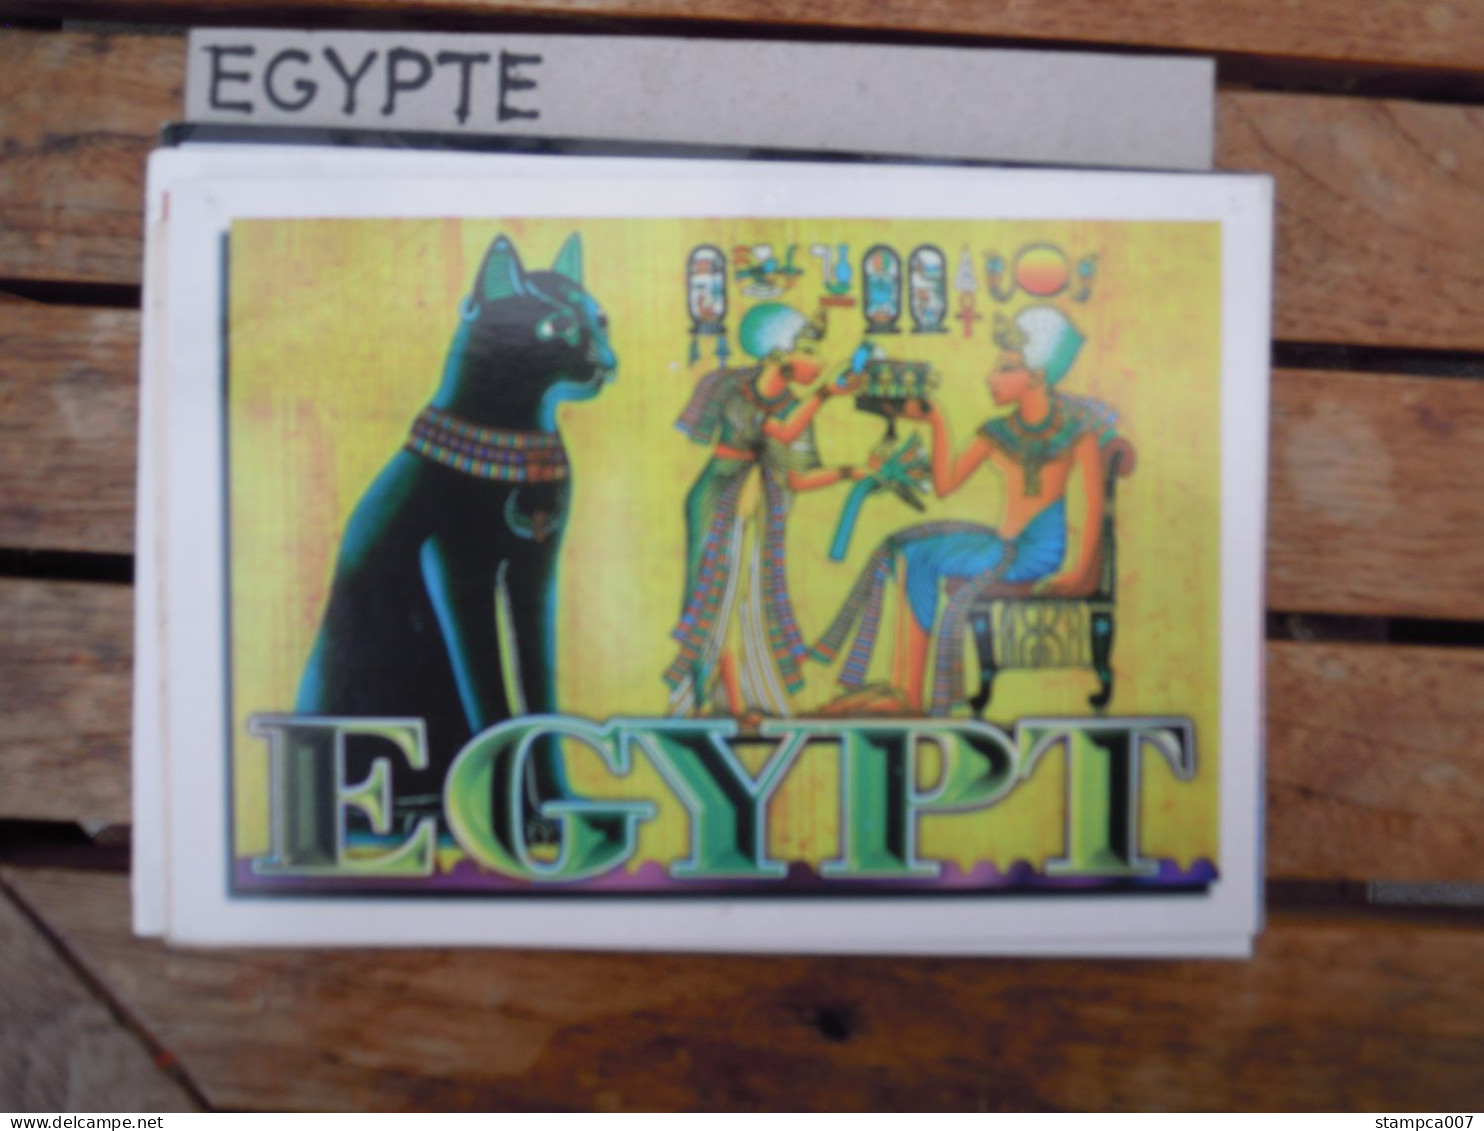 Egypt - Tut Ankamen Cat Chat Kat - Sphynx